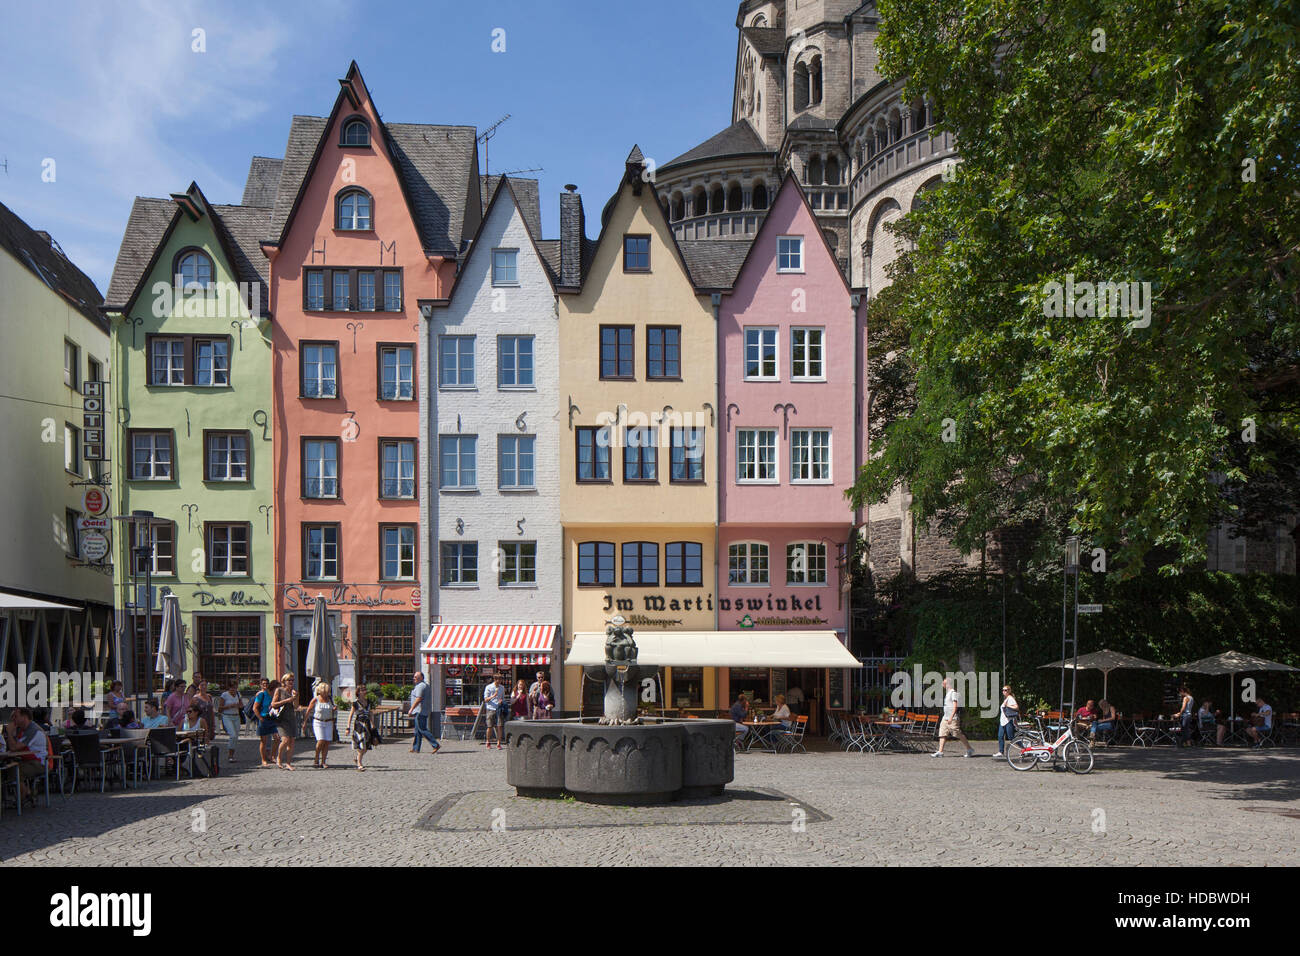 Coloridas casas en mercado de pescado, Colonia, Renania del Norte-Westfalia, Alemania Foto de stock